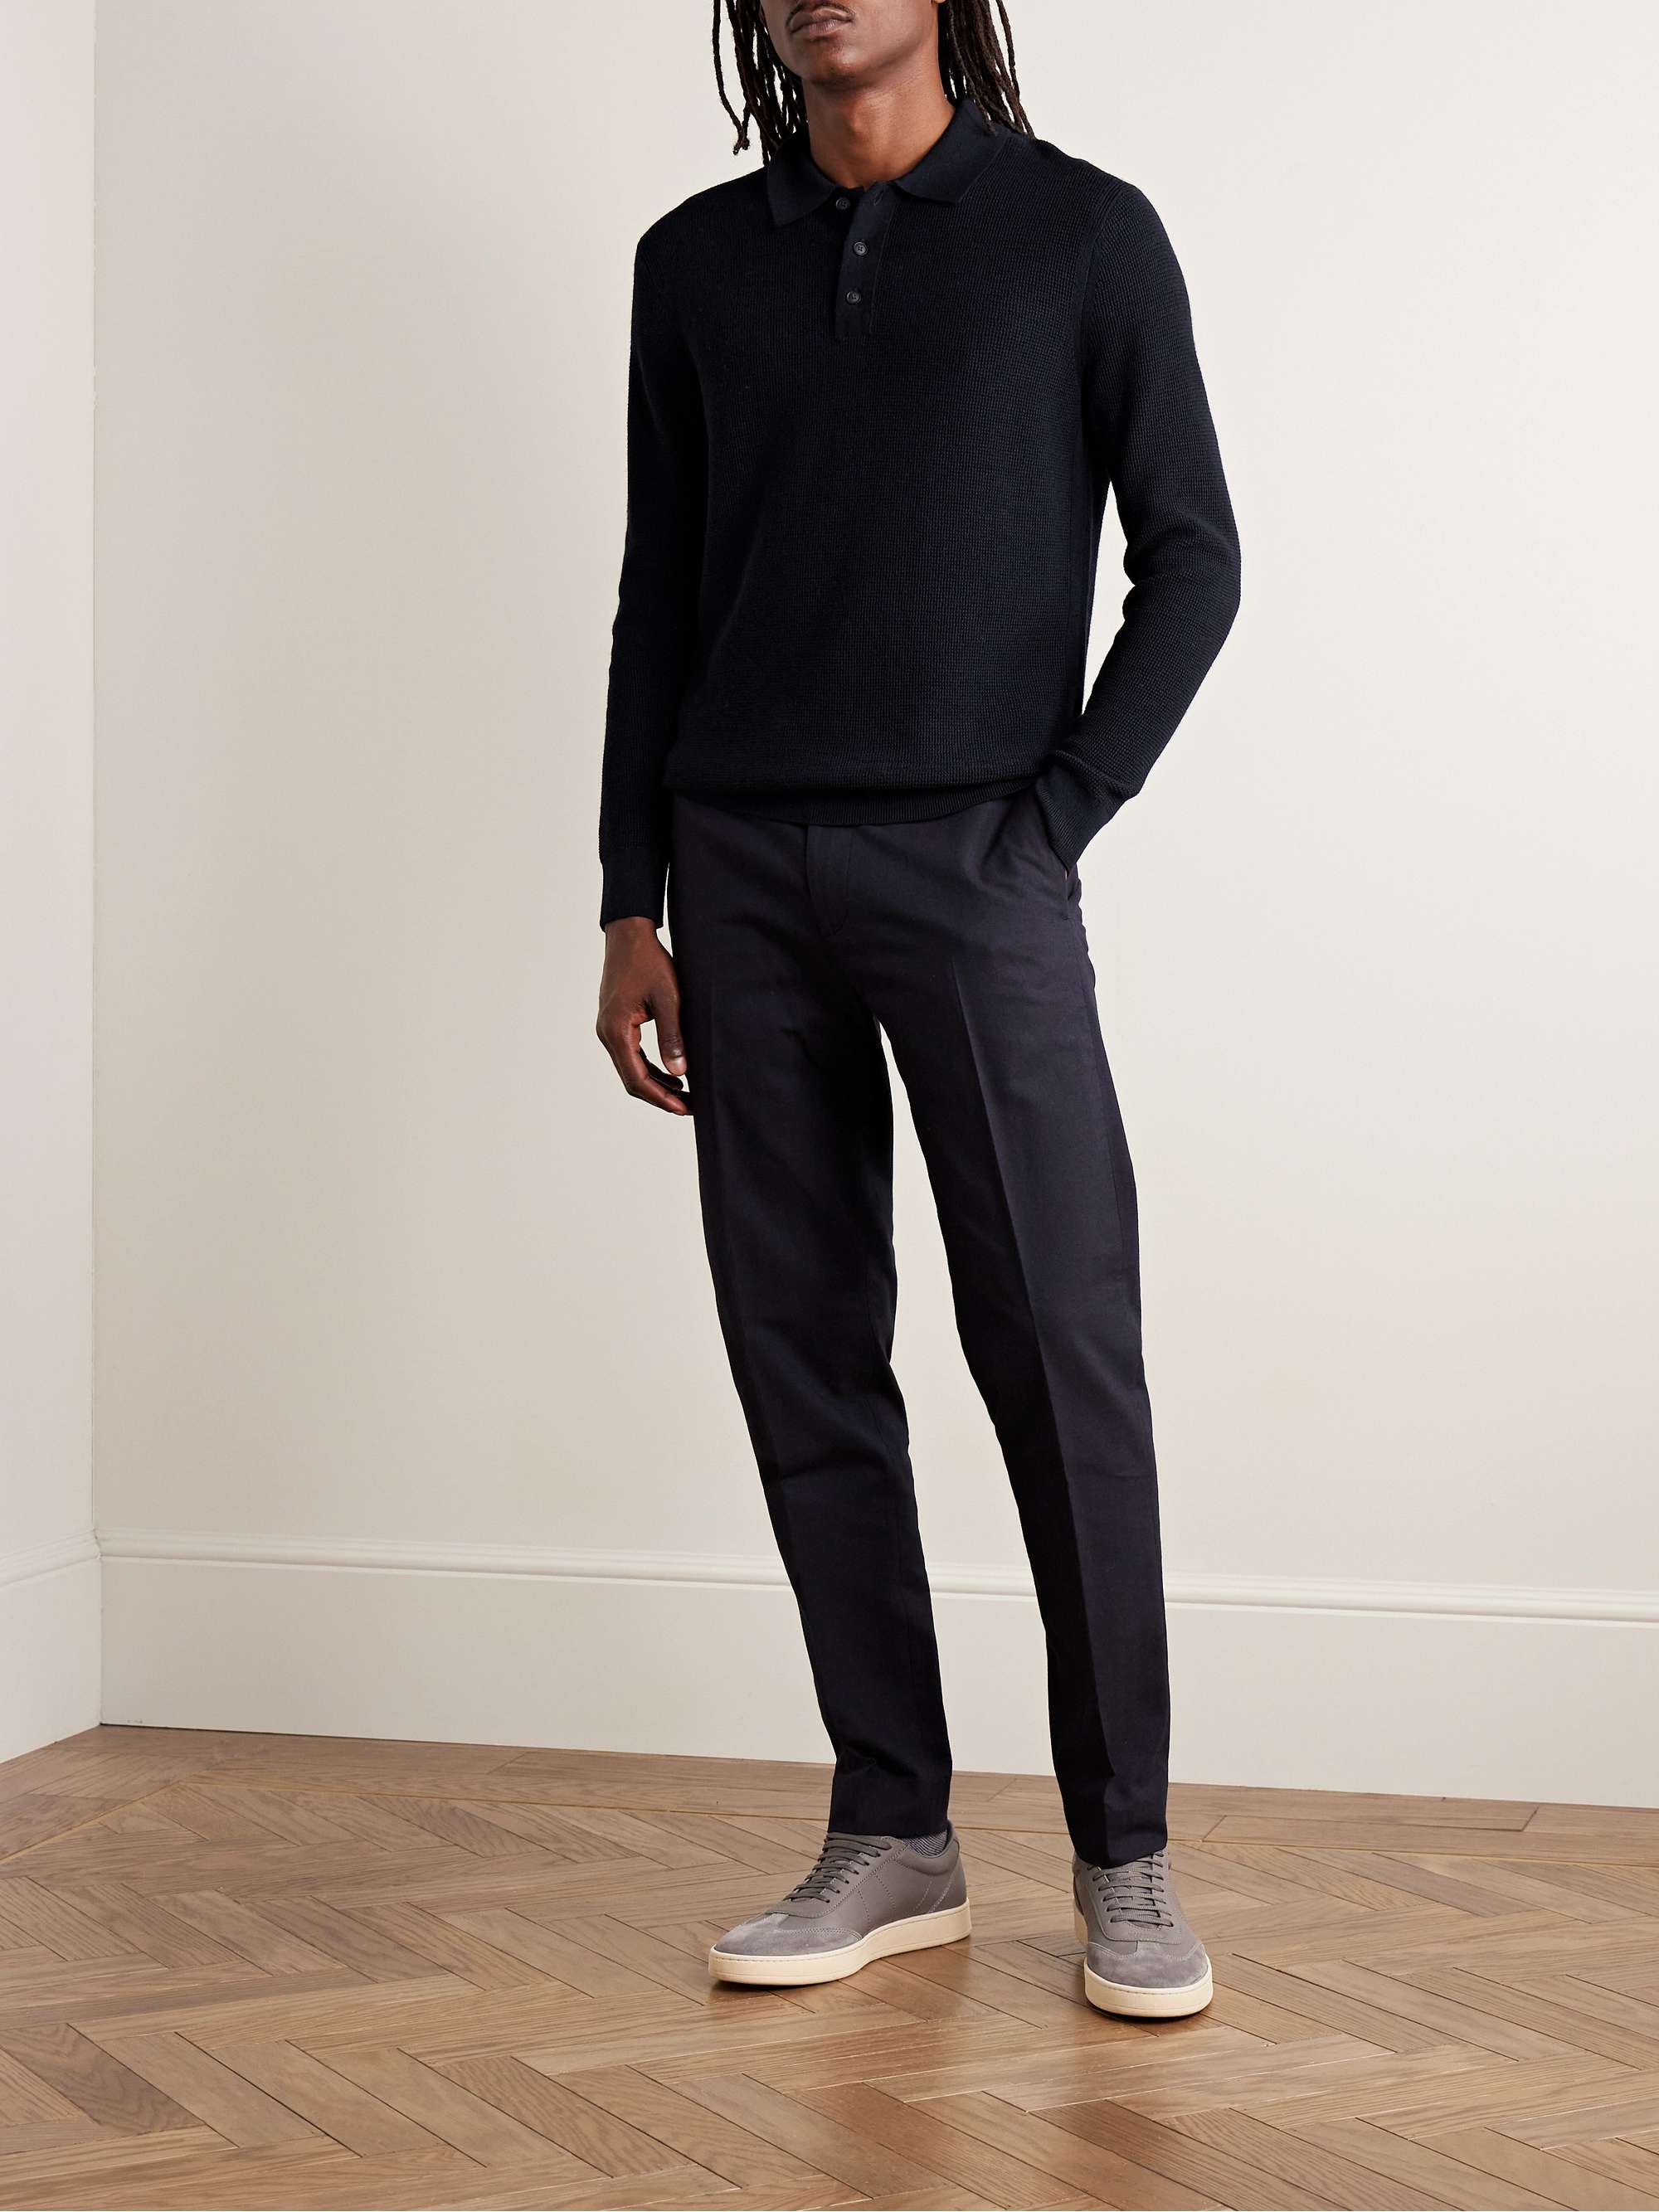 CLUB MONACO Slim-Fit Textured-Knit Merino Wool Polo Shirt for Men | MR ...